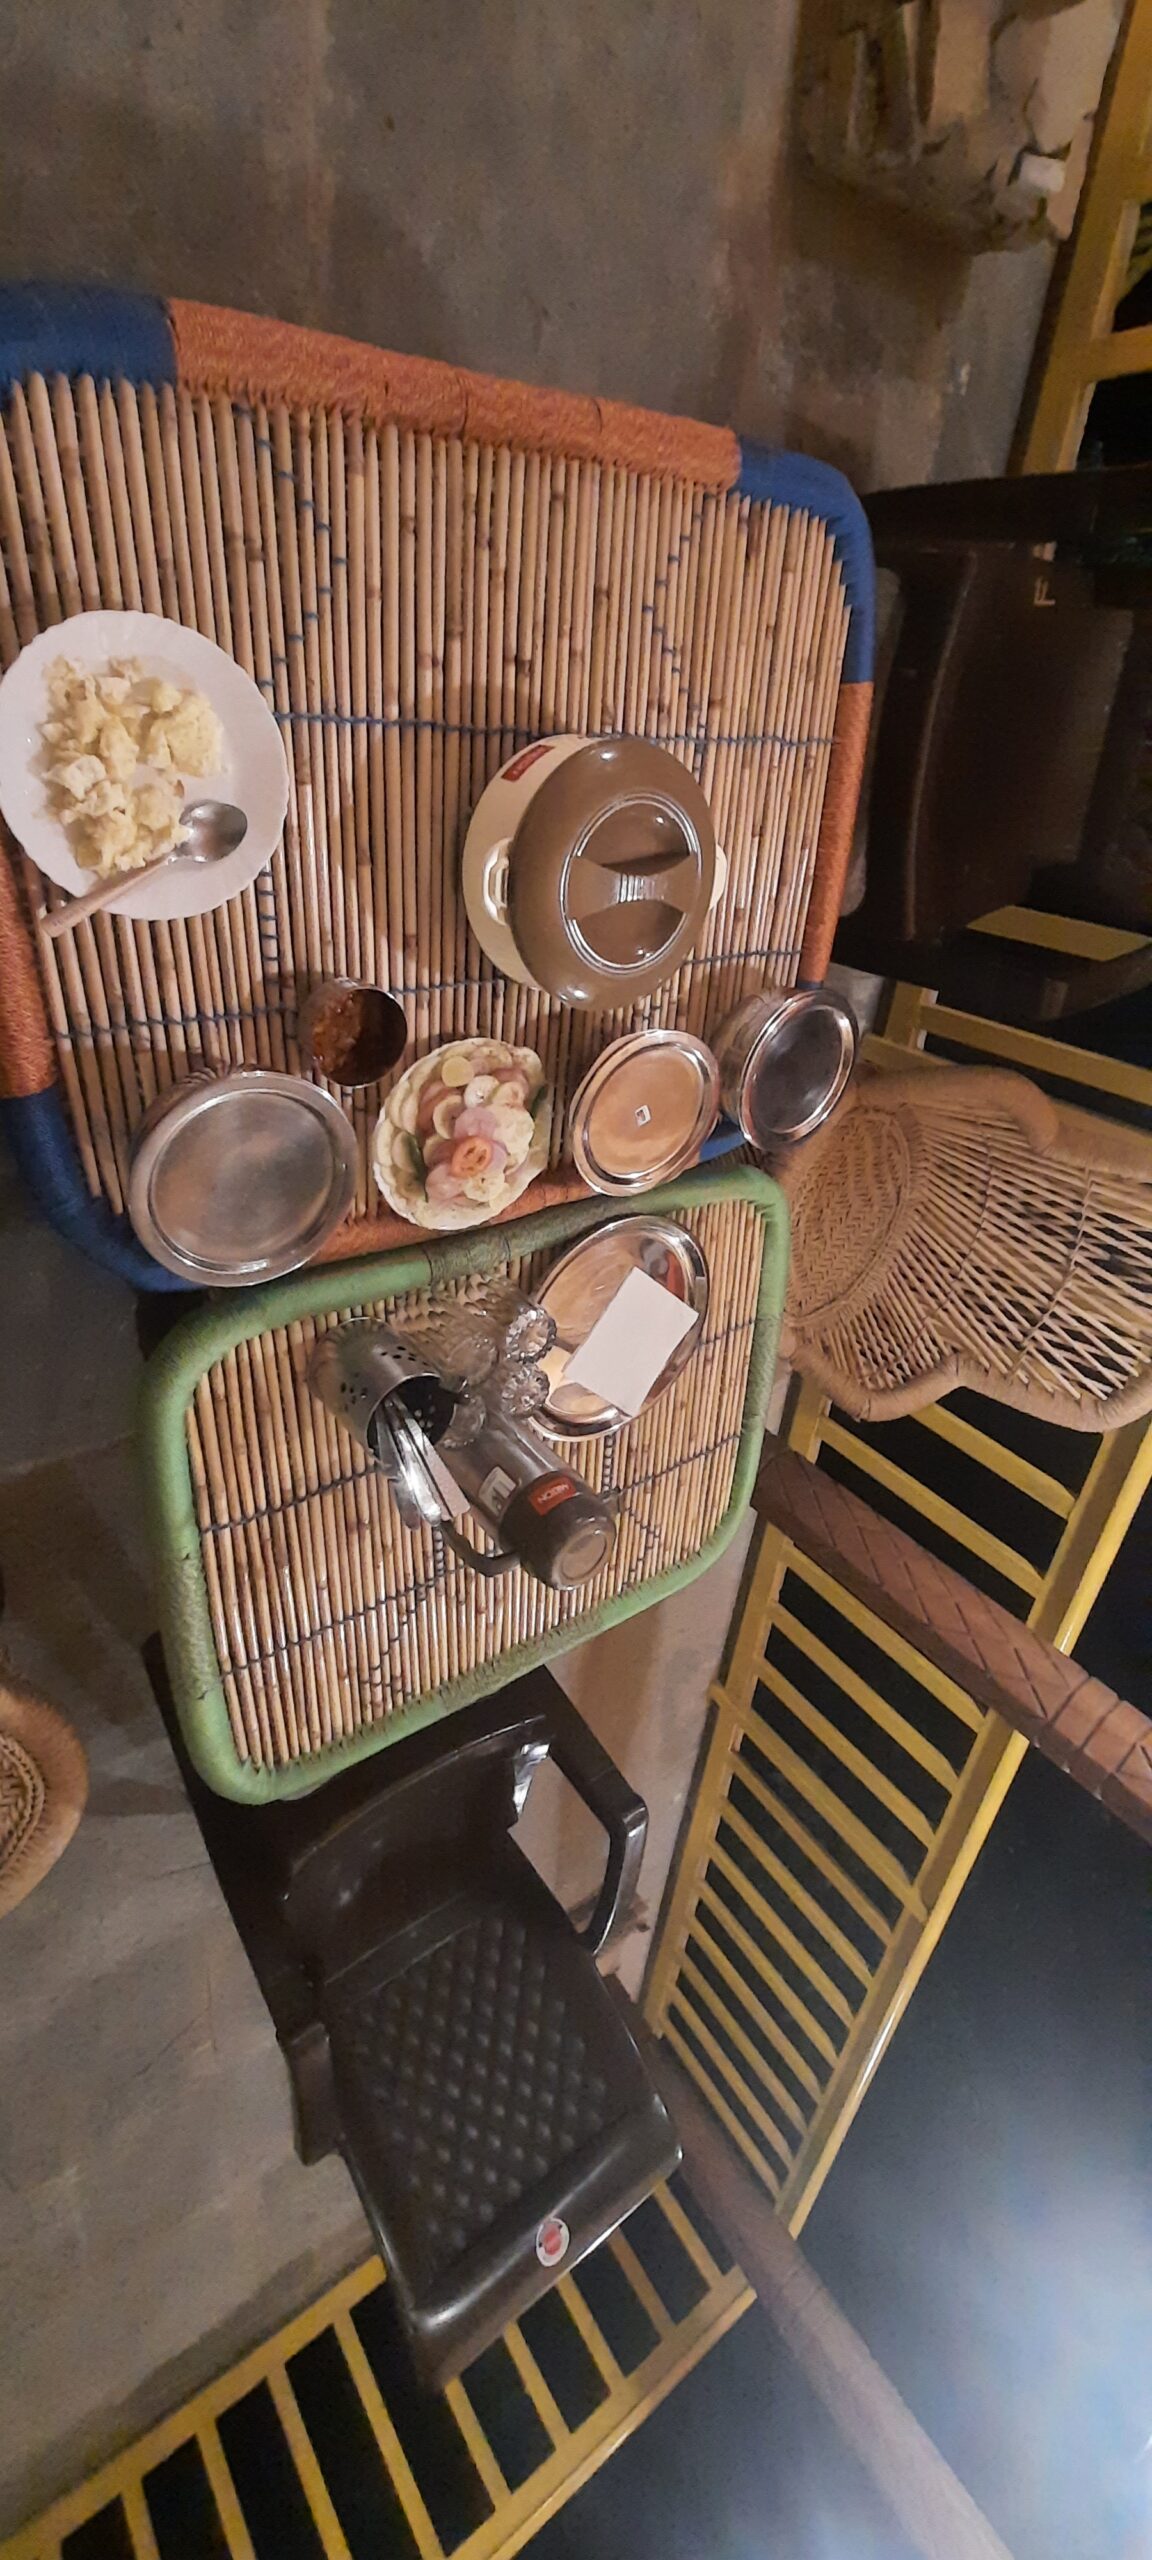 Veselka Food Table